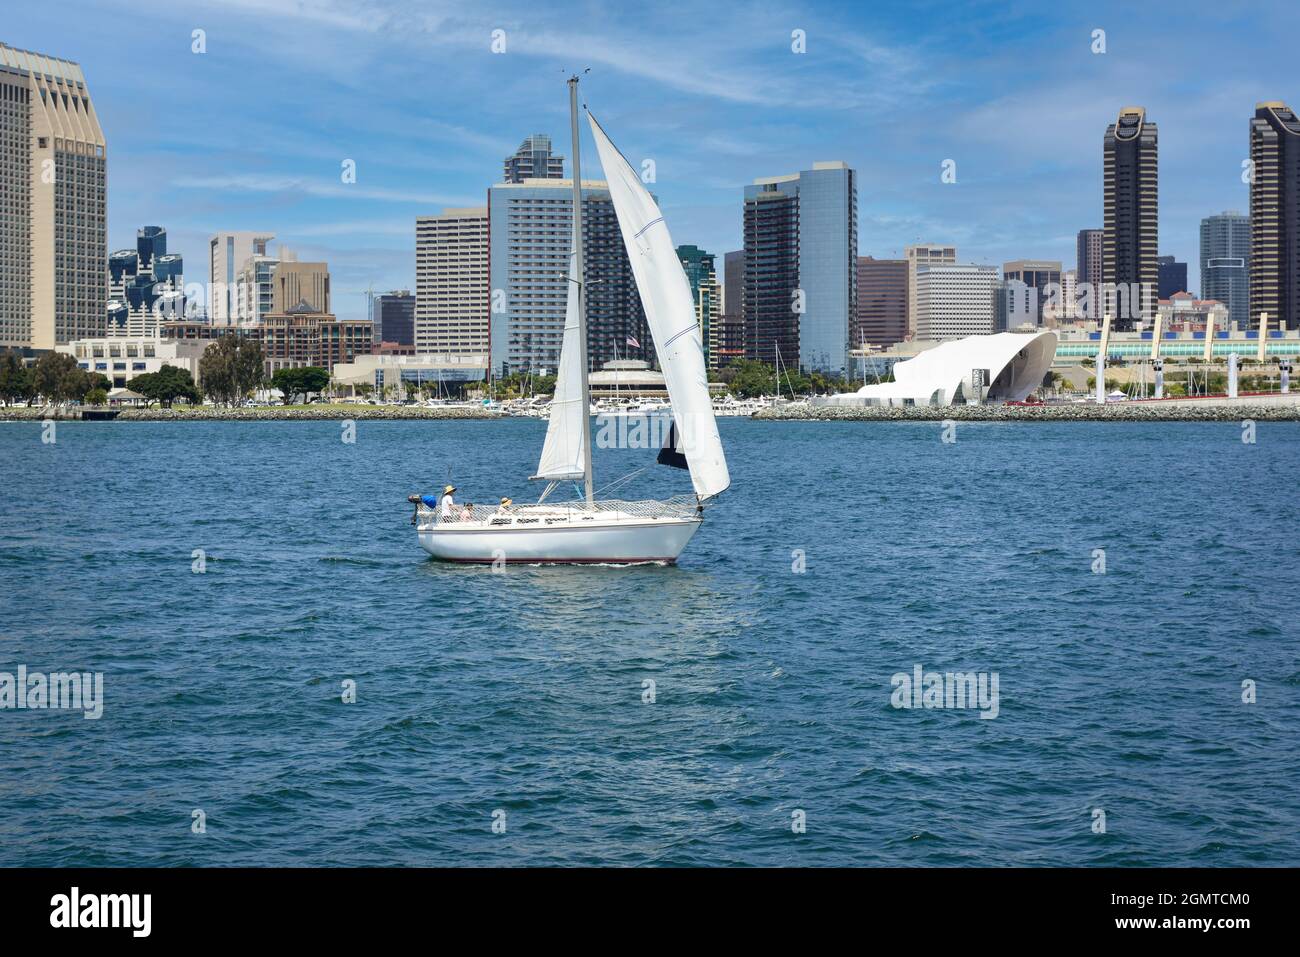 Un voilier traverse la baie de San Diego avant le quartier de la marina en bord de mer et les hôtels Hyatt et Marriott dominent les gratte-ciel de San Diego Banque D'Images